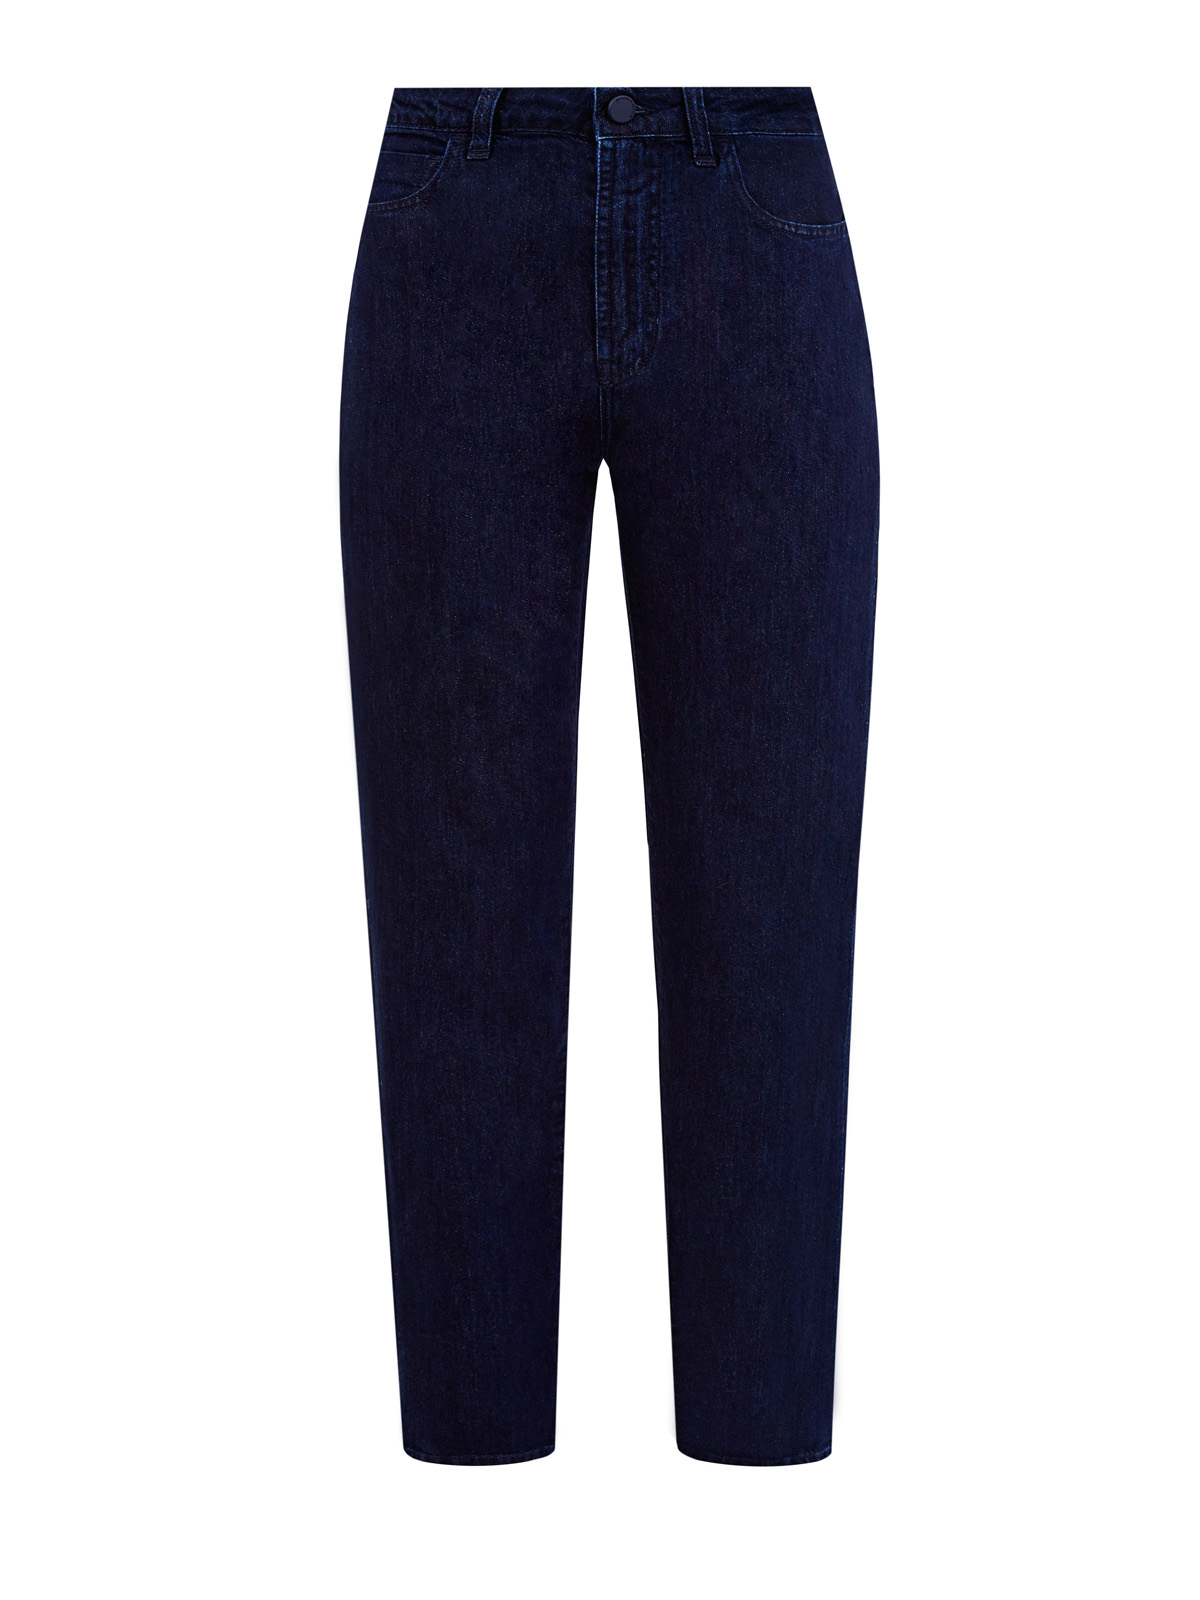 Прямые джинсы Iride из окрашенного вручную денима SCISSOR SCRIPTOR синего цвета